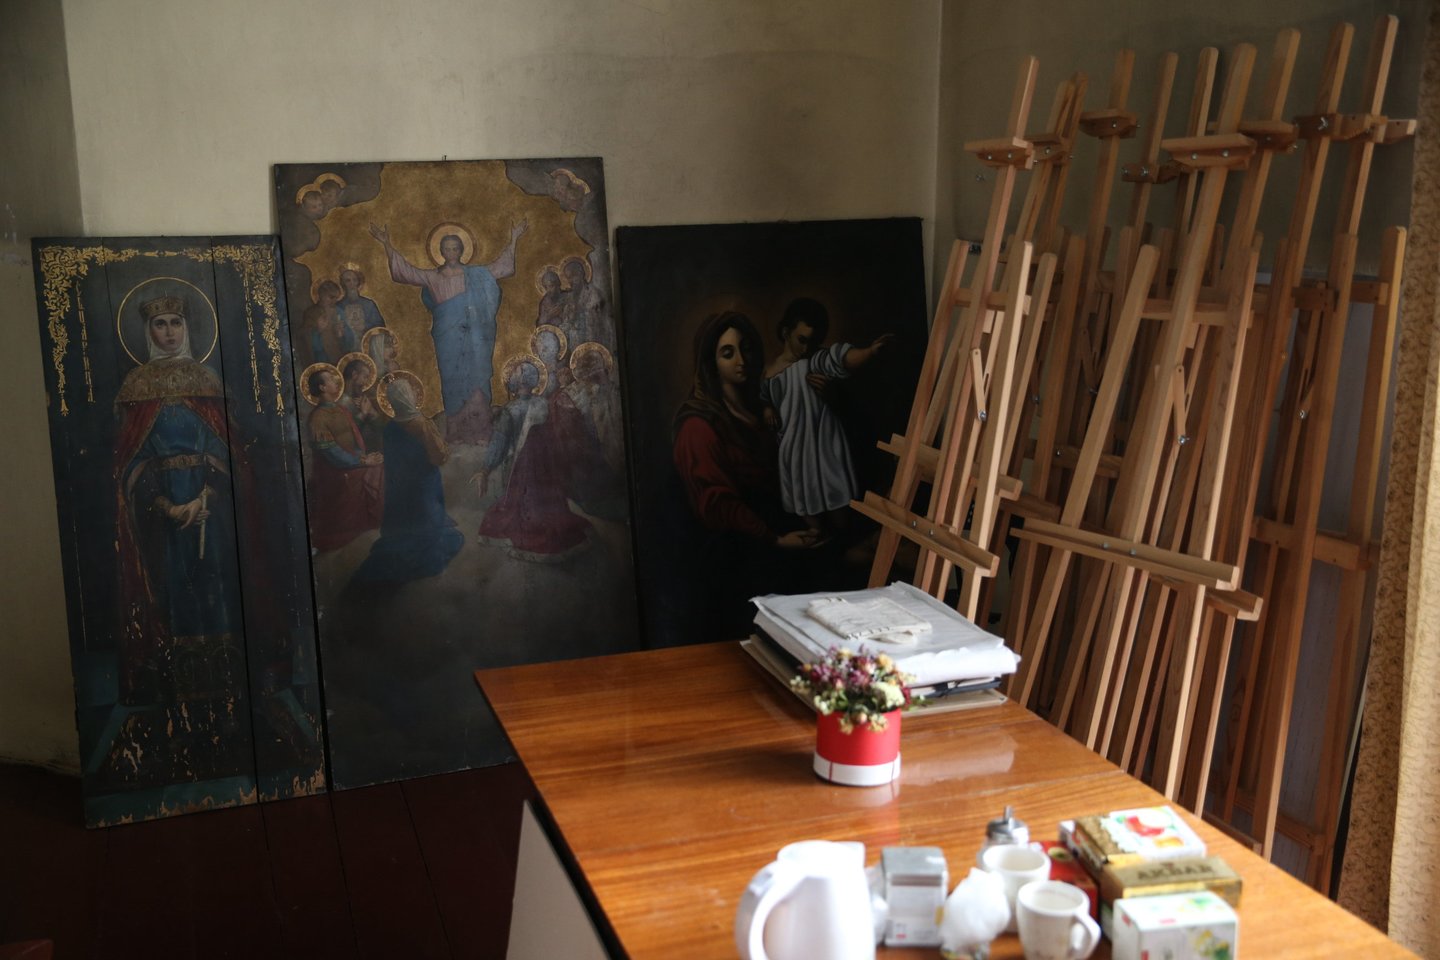  Katedroje vyksta ir pasauliečiams skirti ikonų tapybos kursai.<br> R.Danisevičiaus nuotr.